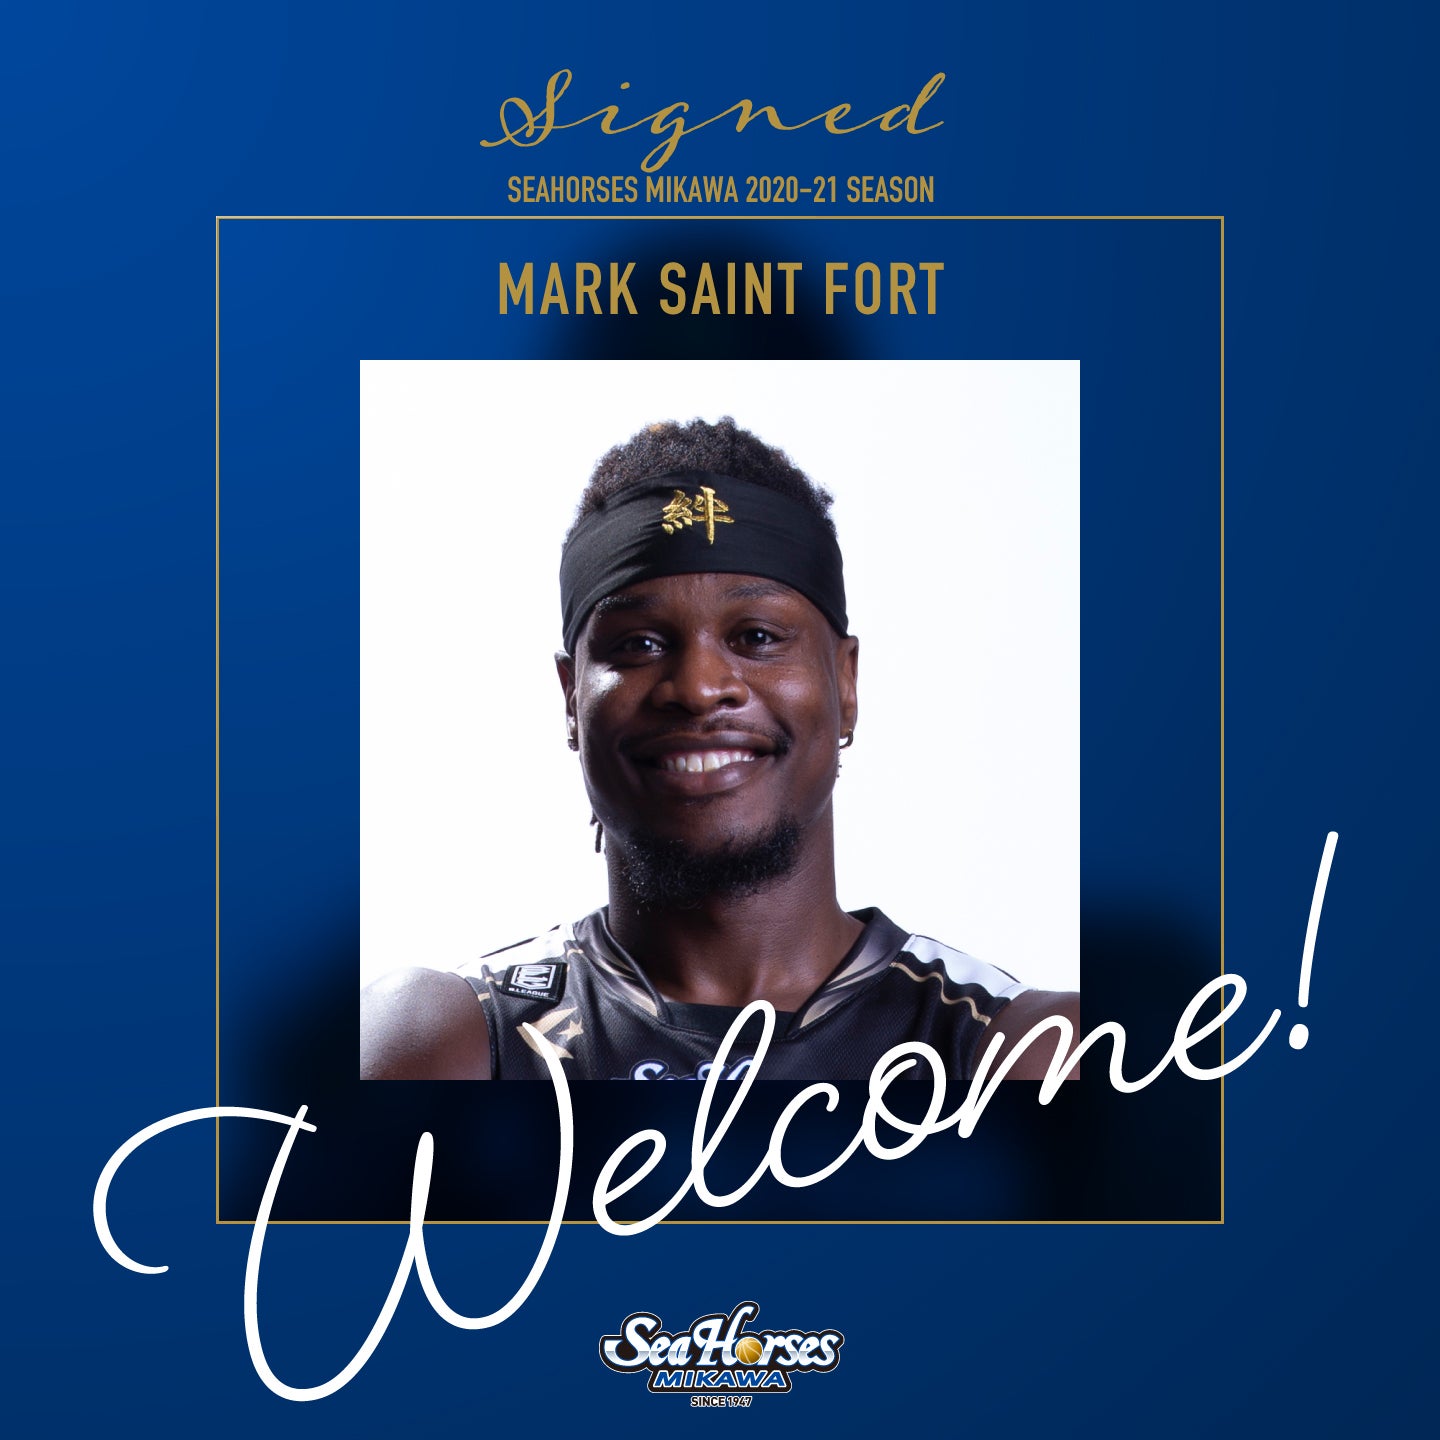 マーク・セントフォート(Mark Saint Fort) 選手